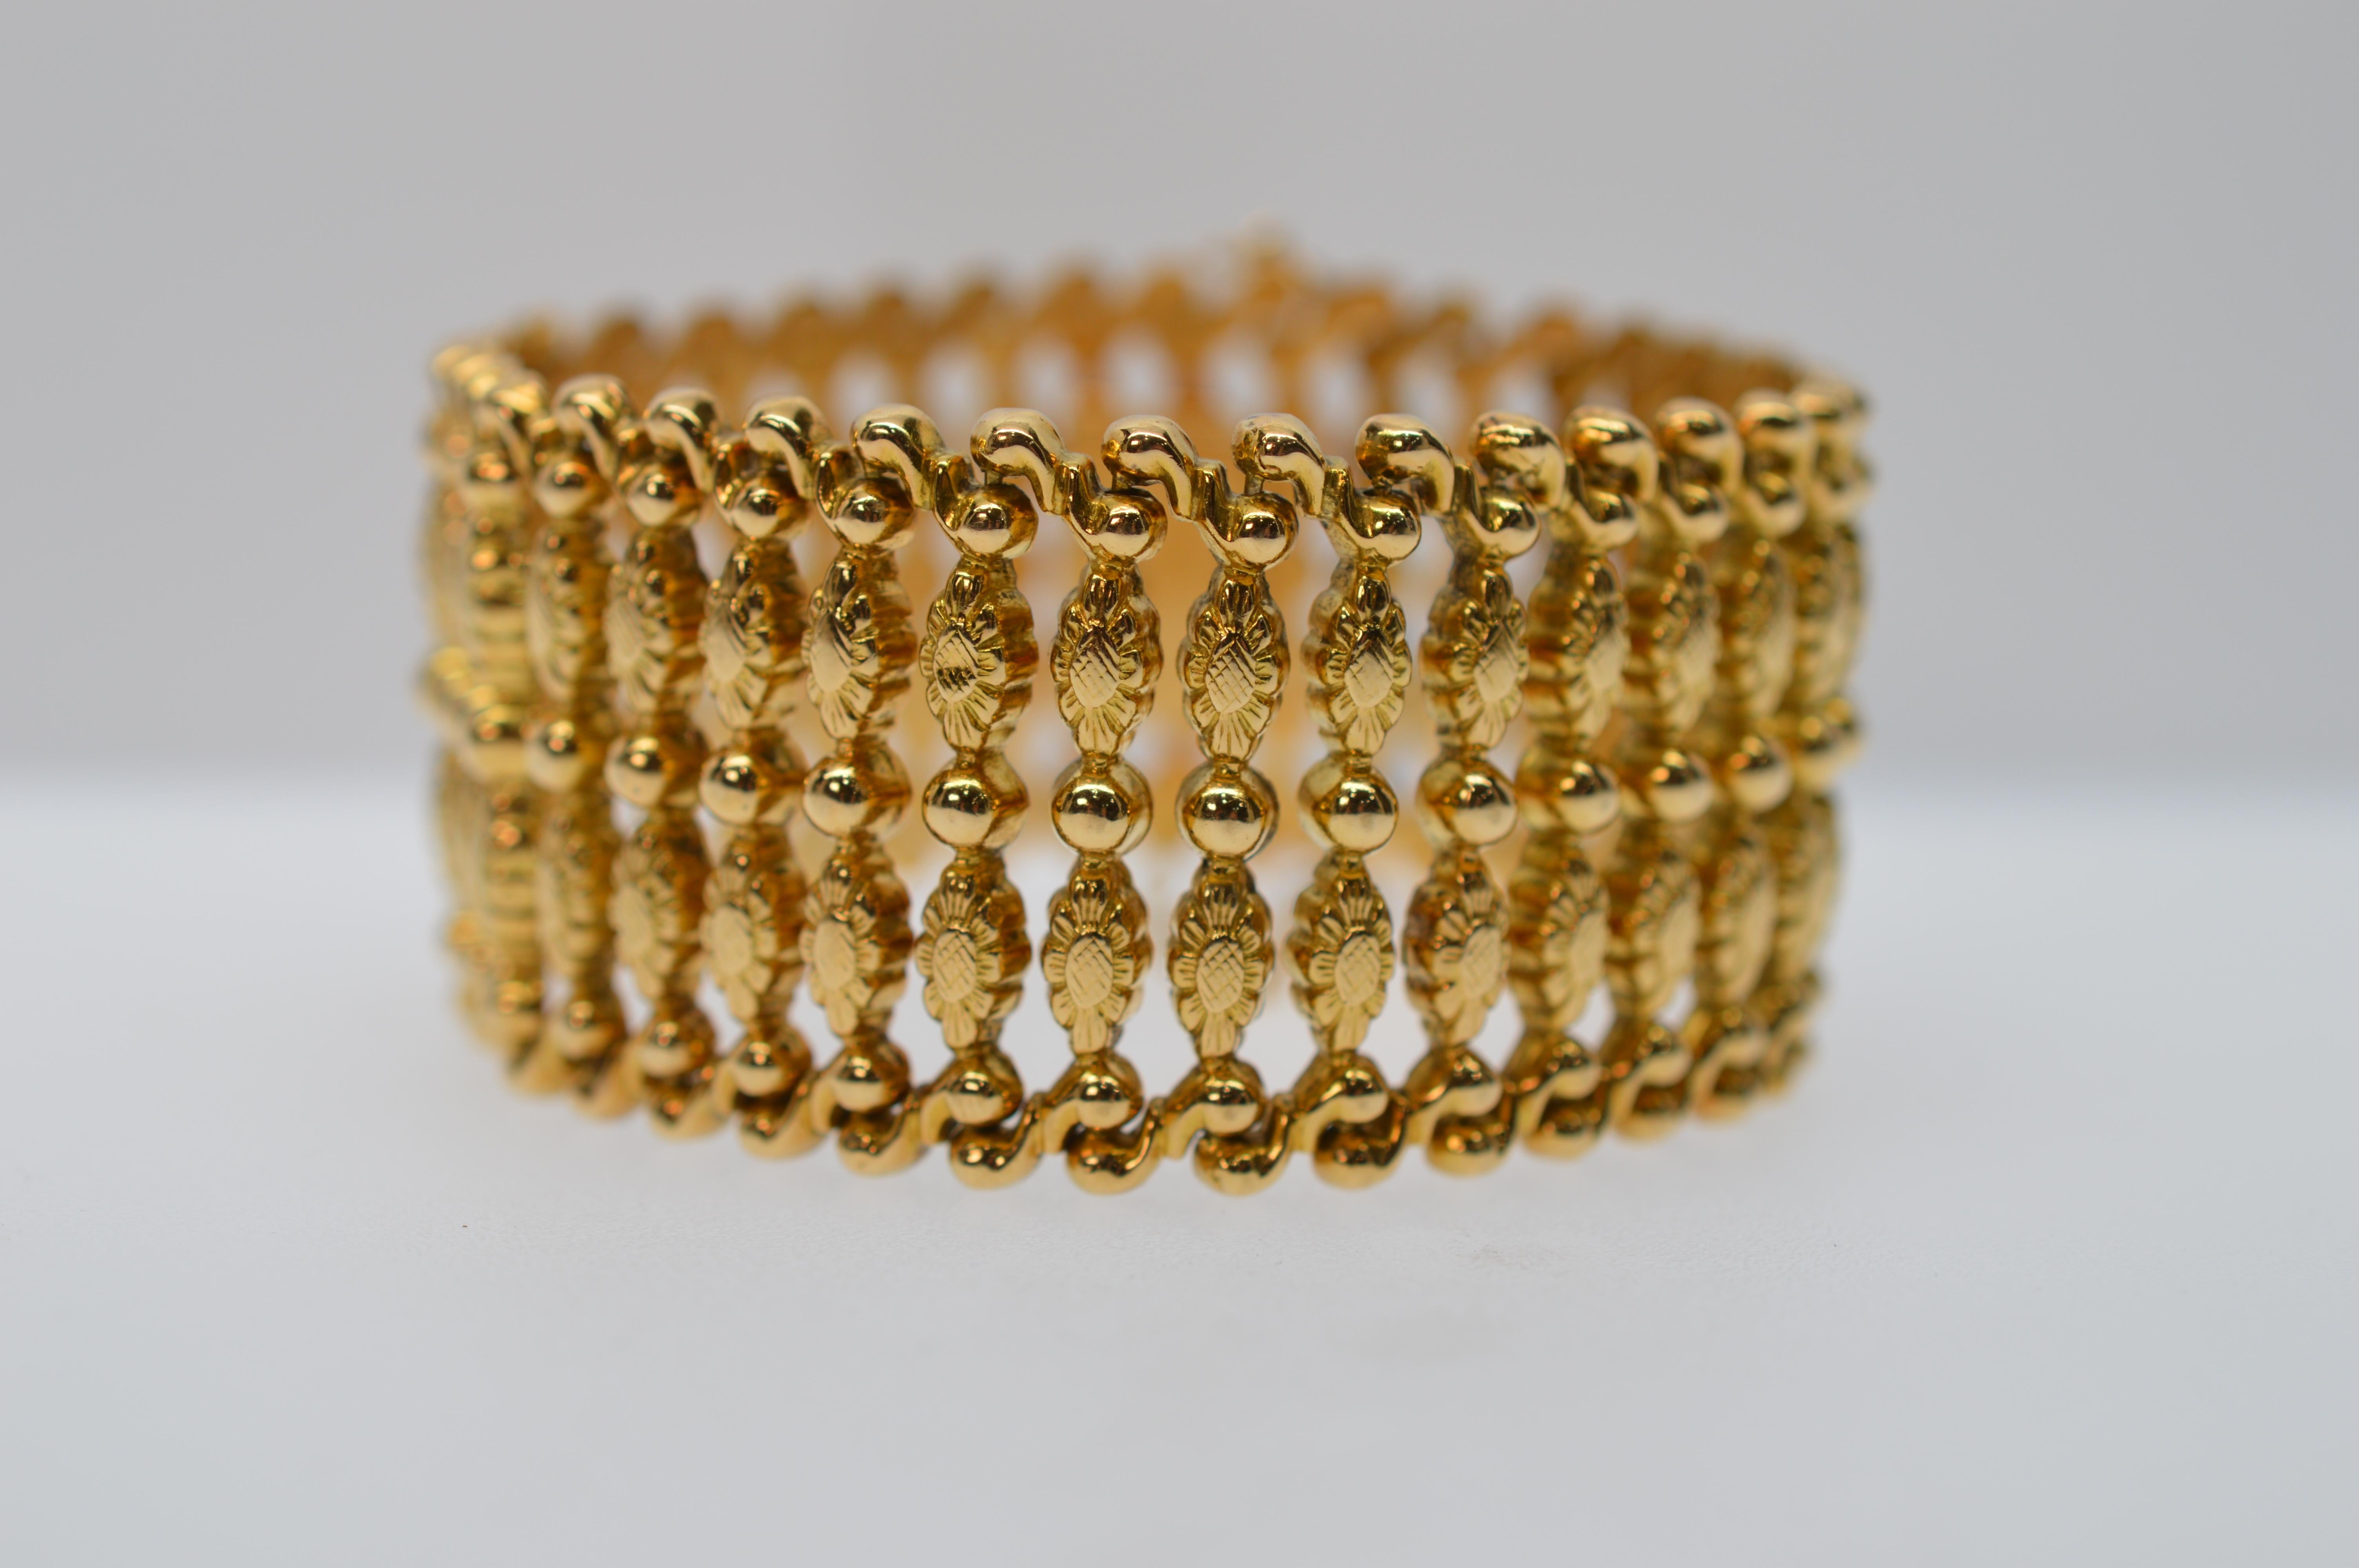 Fabelhaft  etwa 1940er Jahre  achtzehn Karat (18K) Gelbgold Armband ist ein unbestreitbarer Schatz. Mess 7-1/2 Zoll lang und eine bemerkenswerte 1-1/4 Zoll breit, die helle und erhebliche .750 Gold Links dieses Stückes machen eine kühne Aussage. 